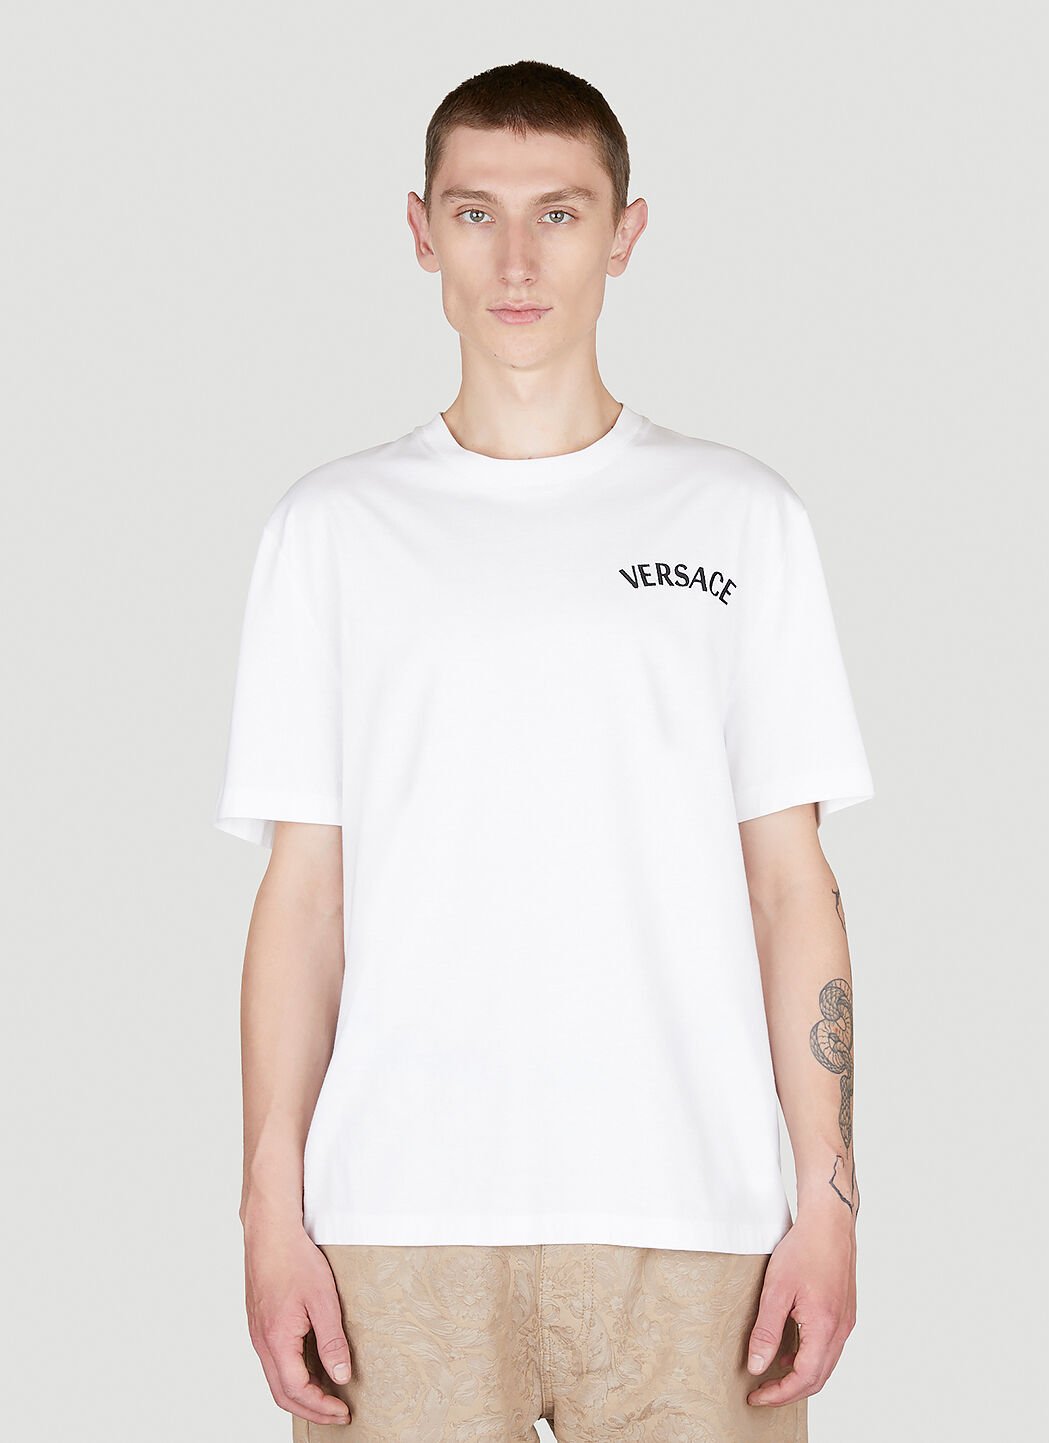 Versace ミラノスタンプ Tシャツ ホワイト ver0154004